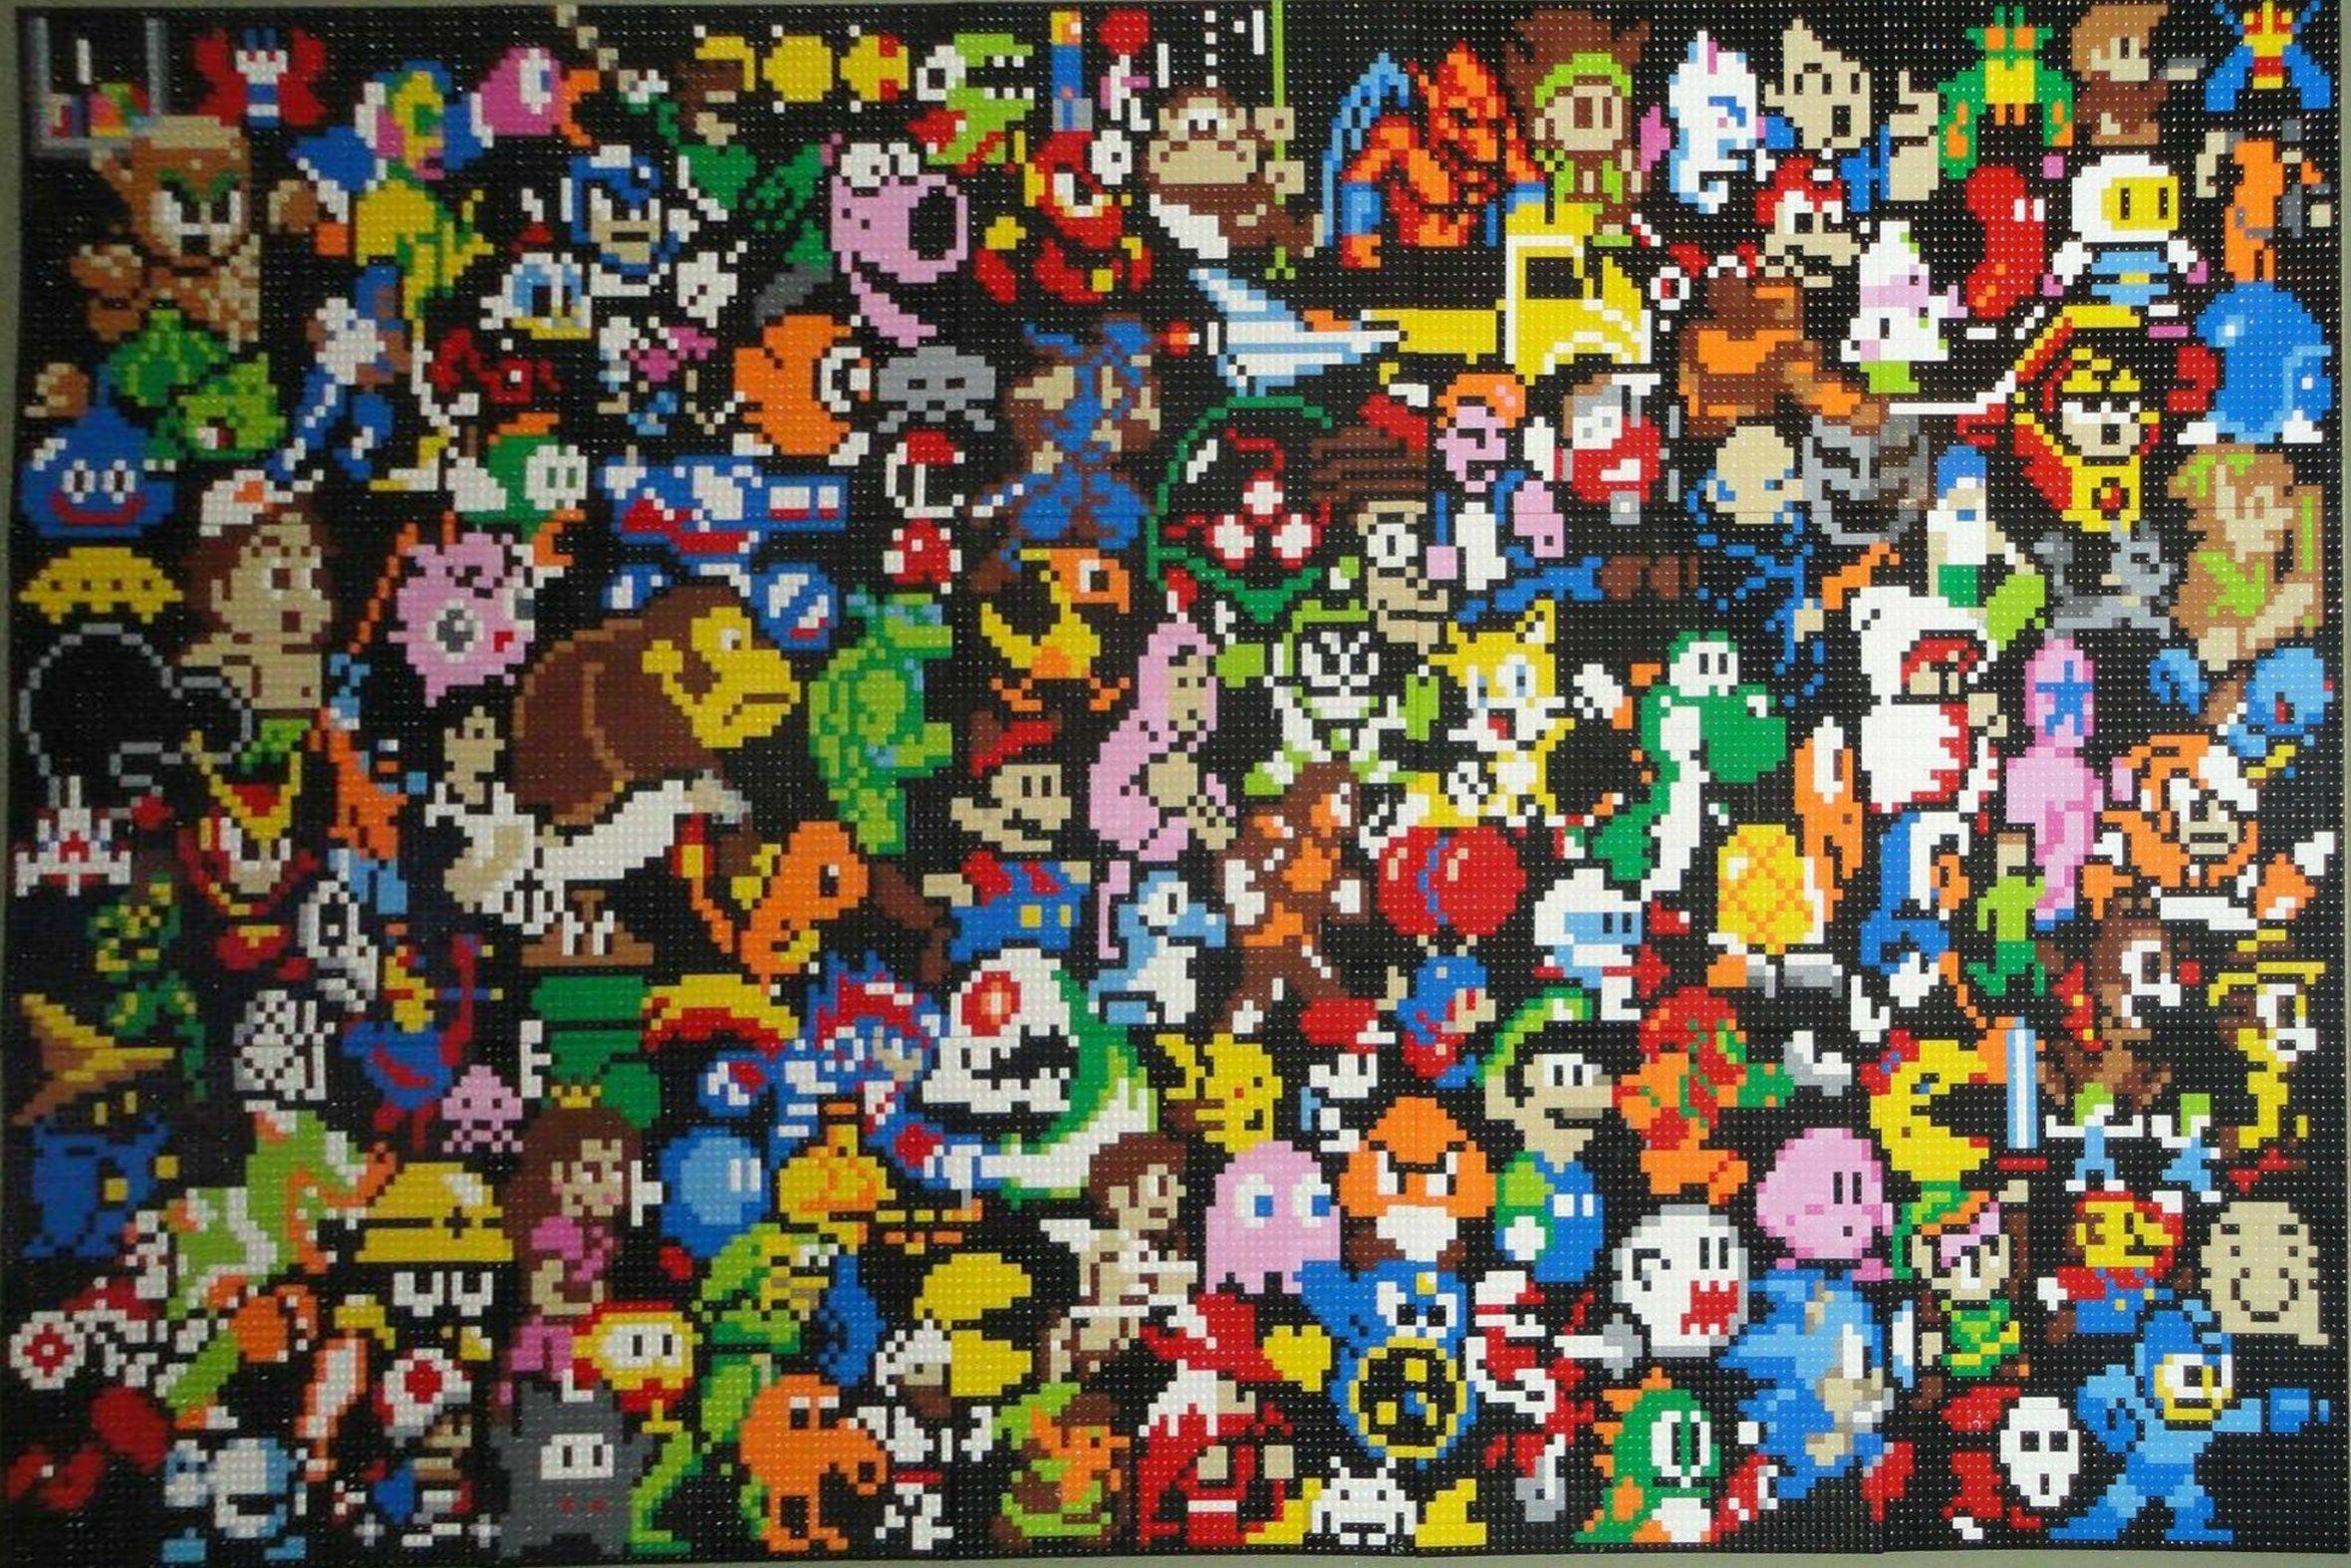 Retro Game Wallpaper